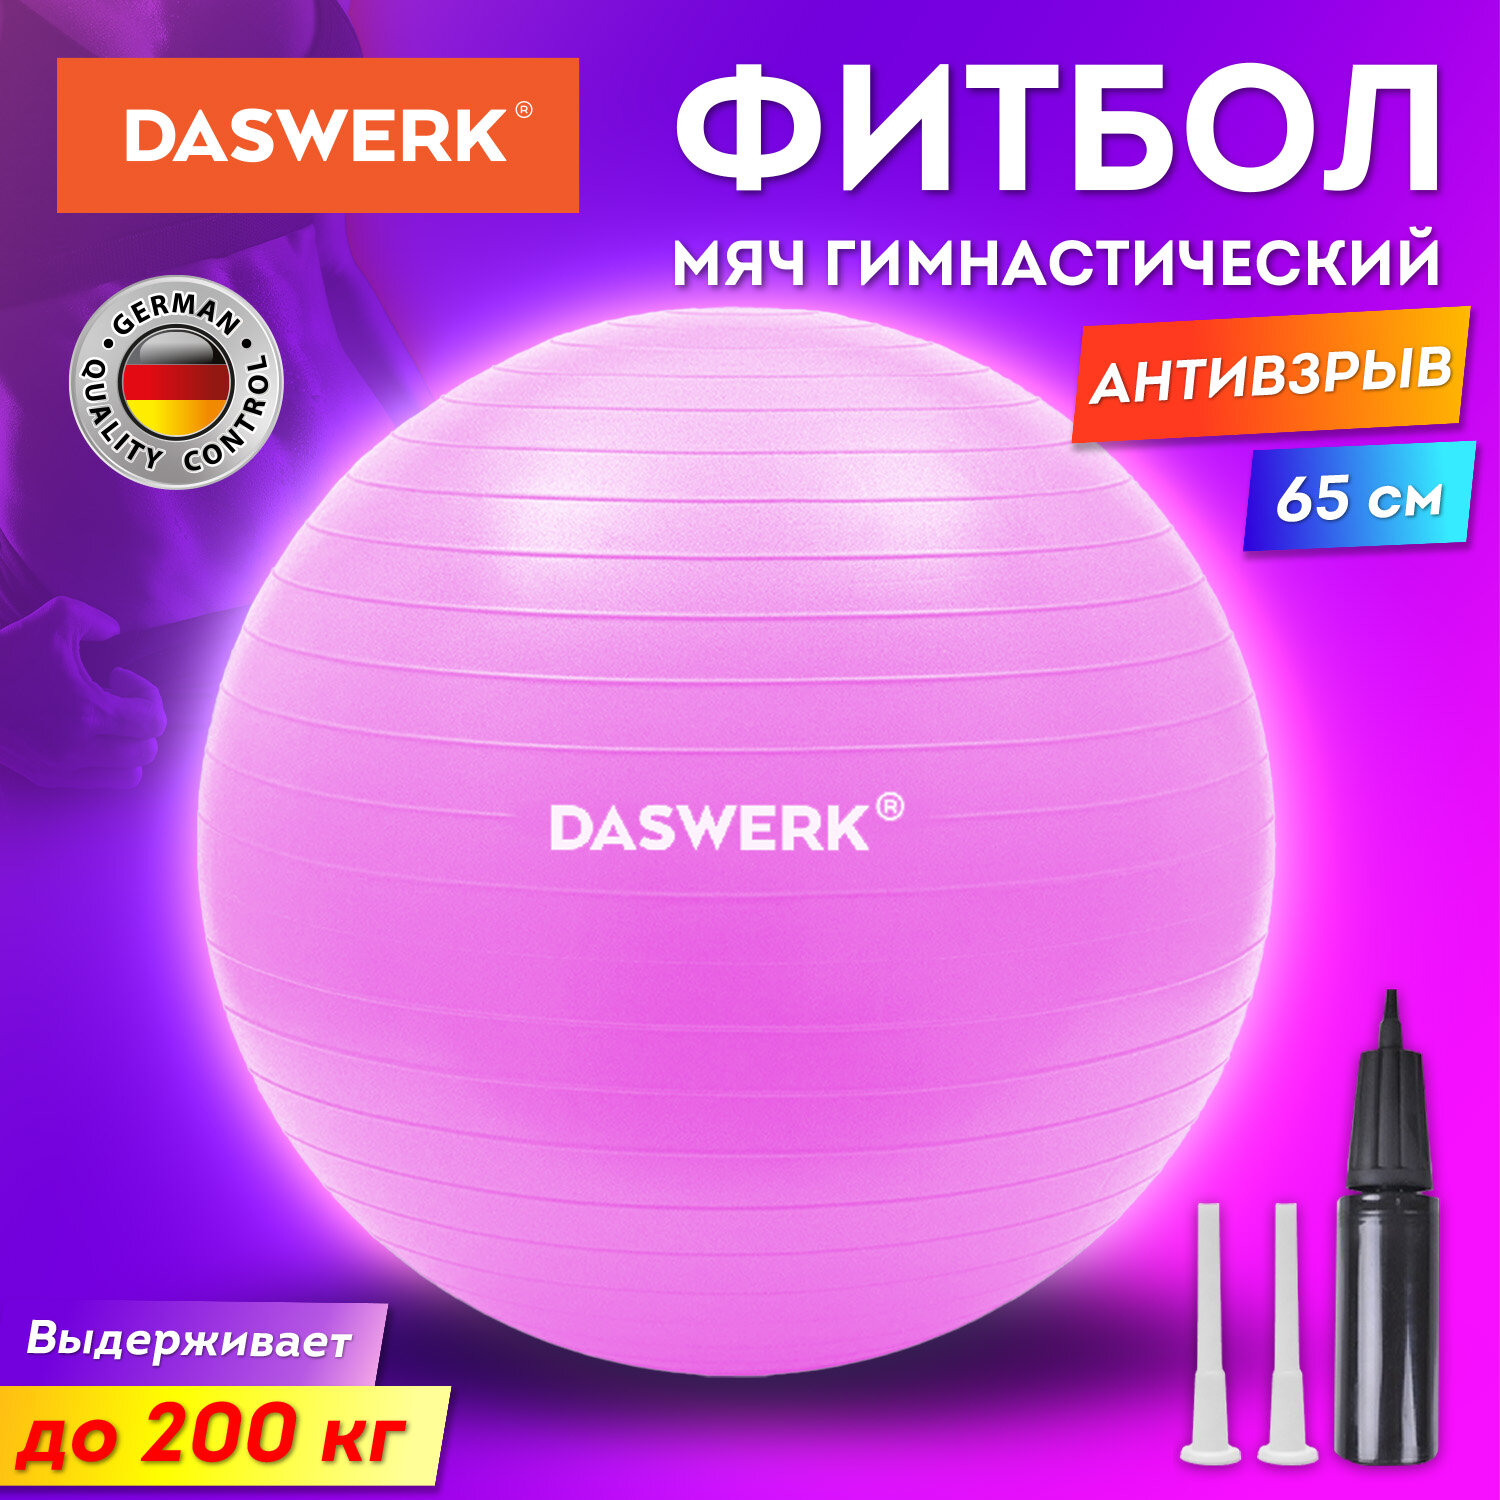 Фитбол DASWERK мяч гимнастический 65 см с эффектом антивзрыв и ручным насосом - фото 2